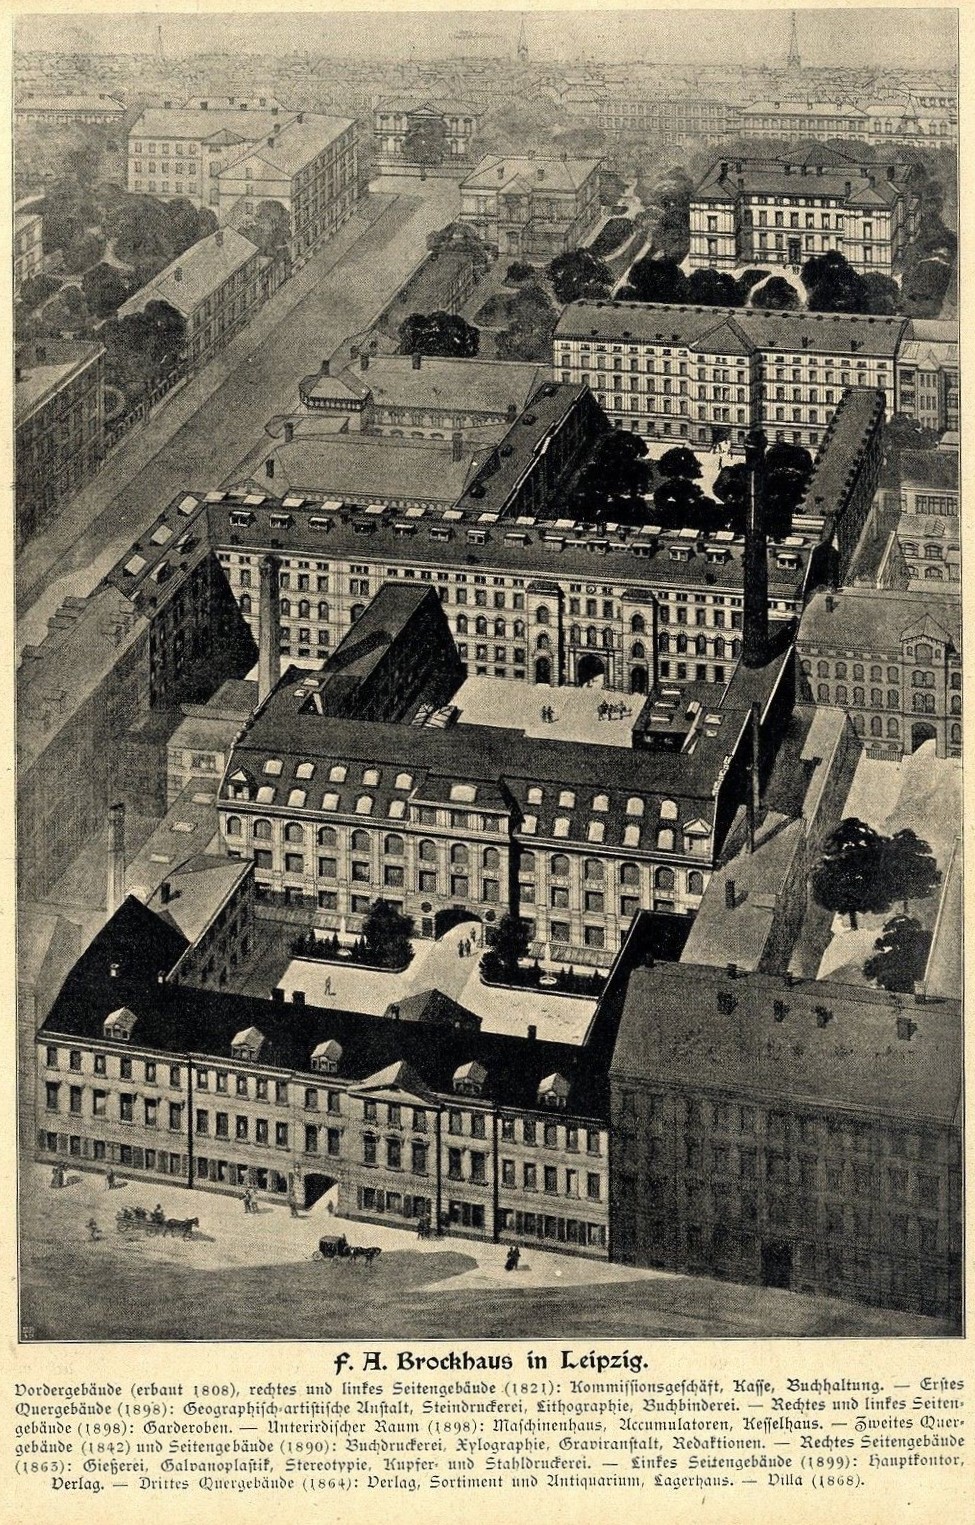 Das Brockhaus-Gebäude in Leipzig, 1899